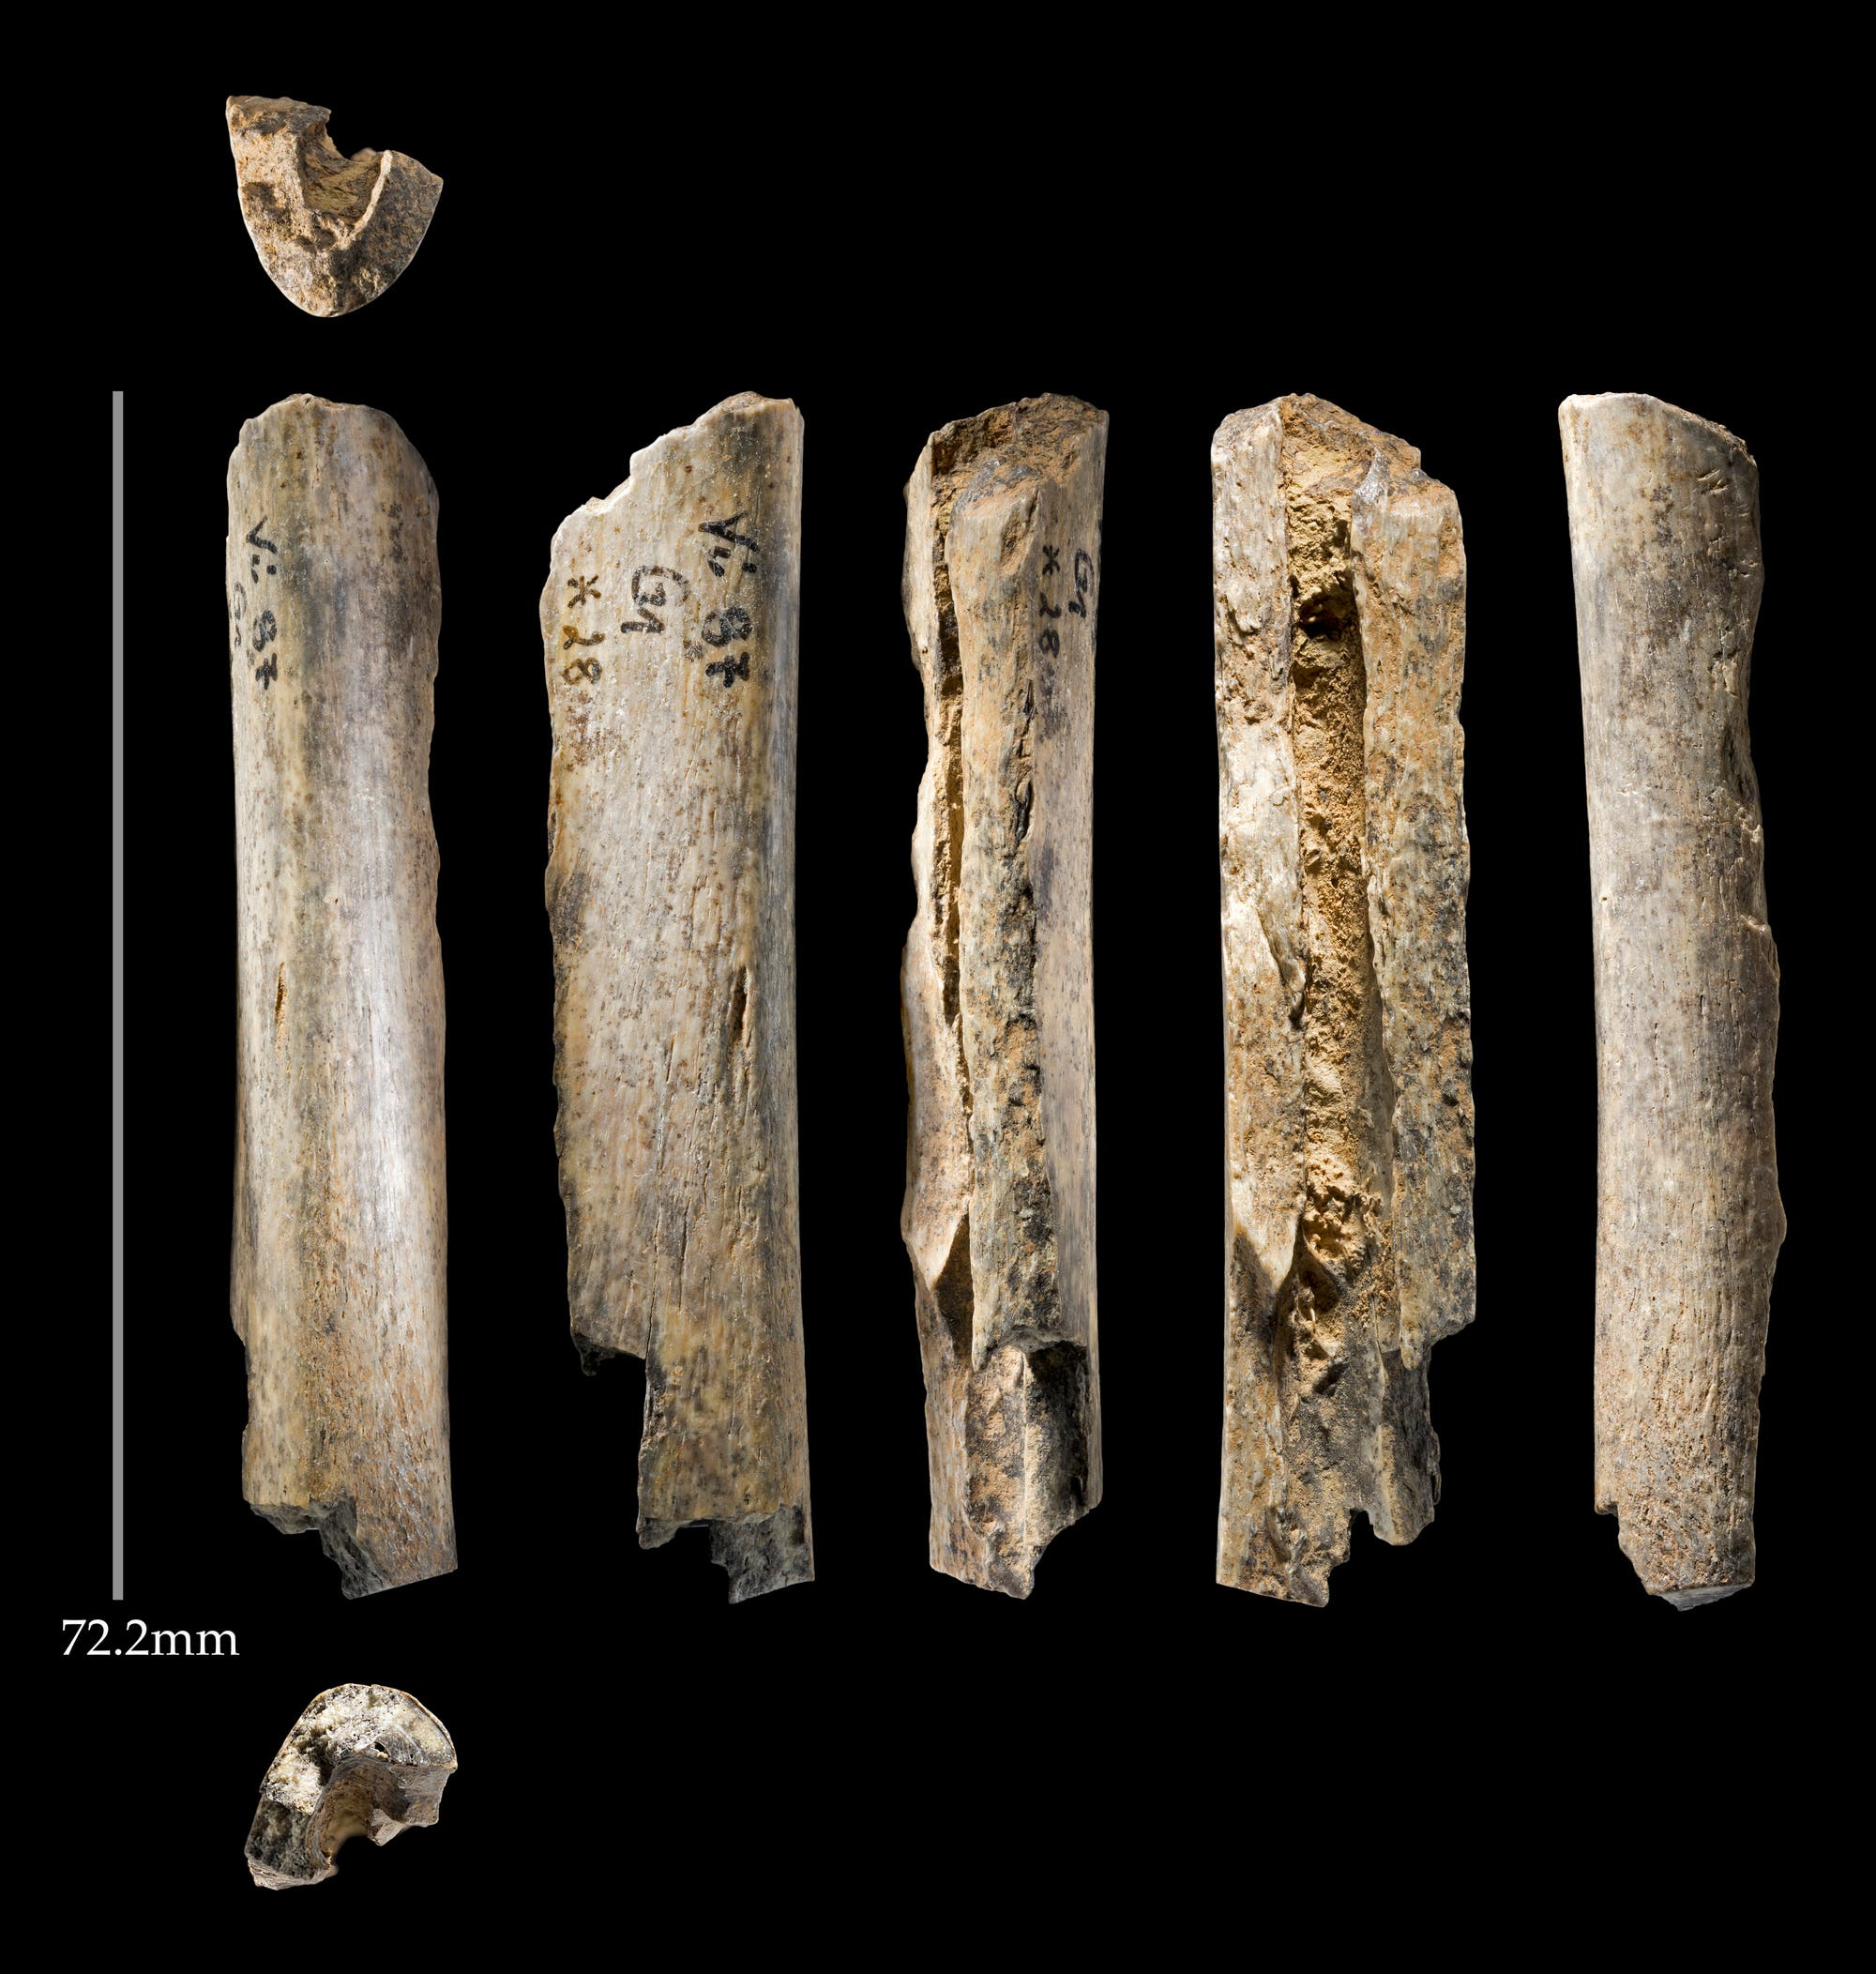 Knochen von Neandertalern aus der Vindija-Höhle